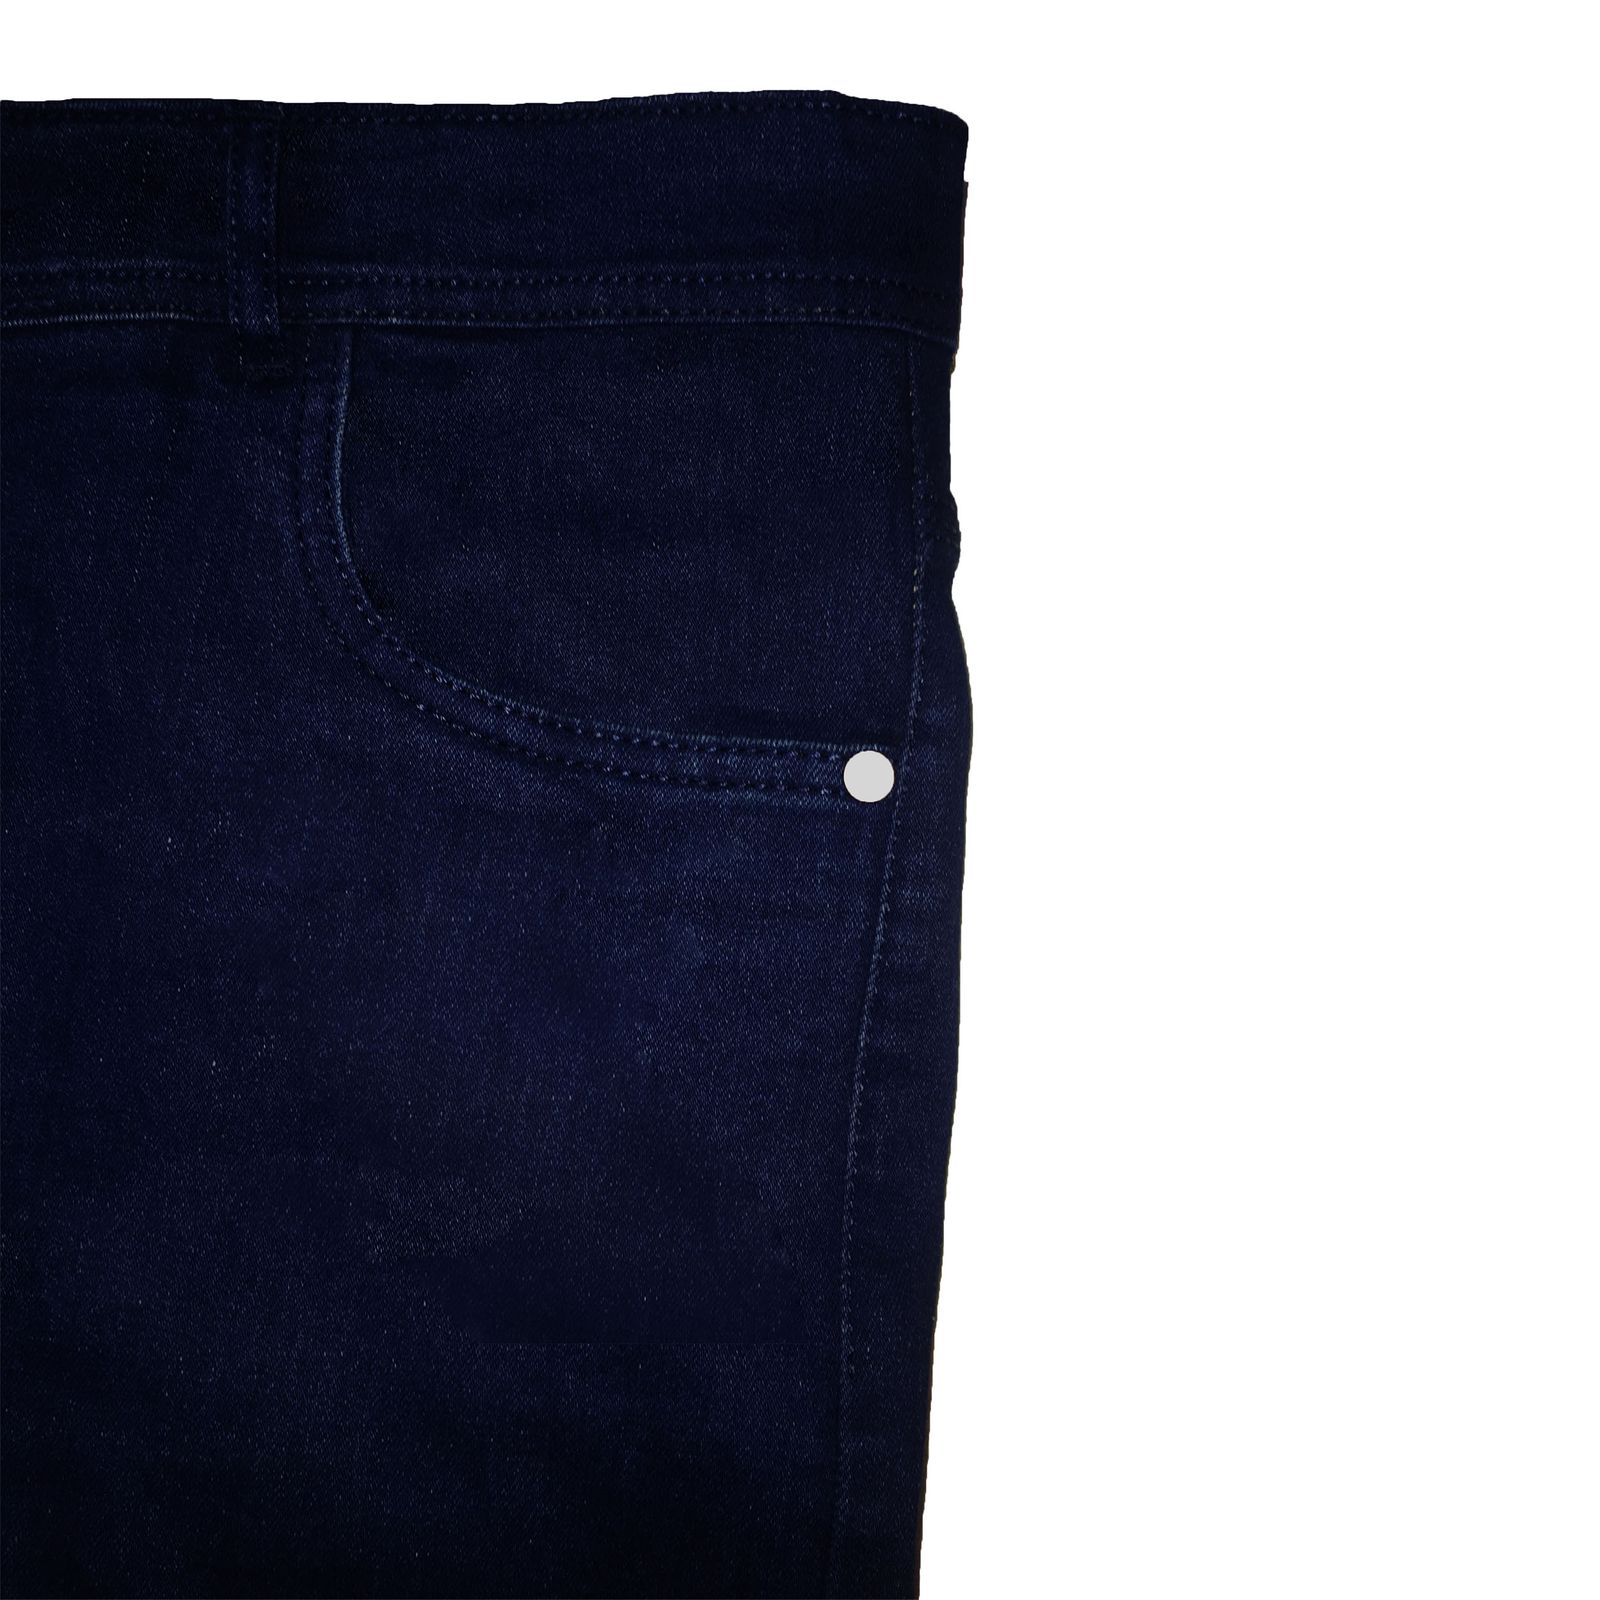 شلوار جین مردانه مدل W01401 -  - 7